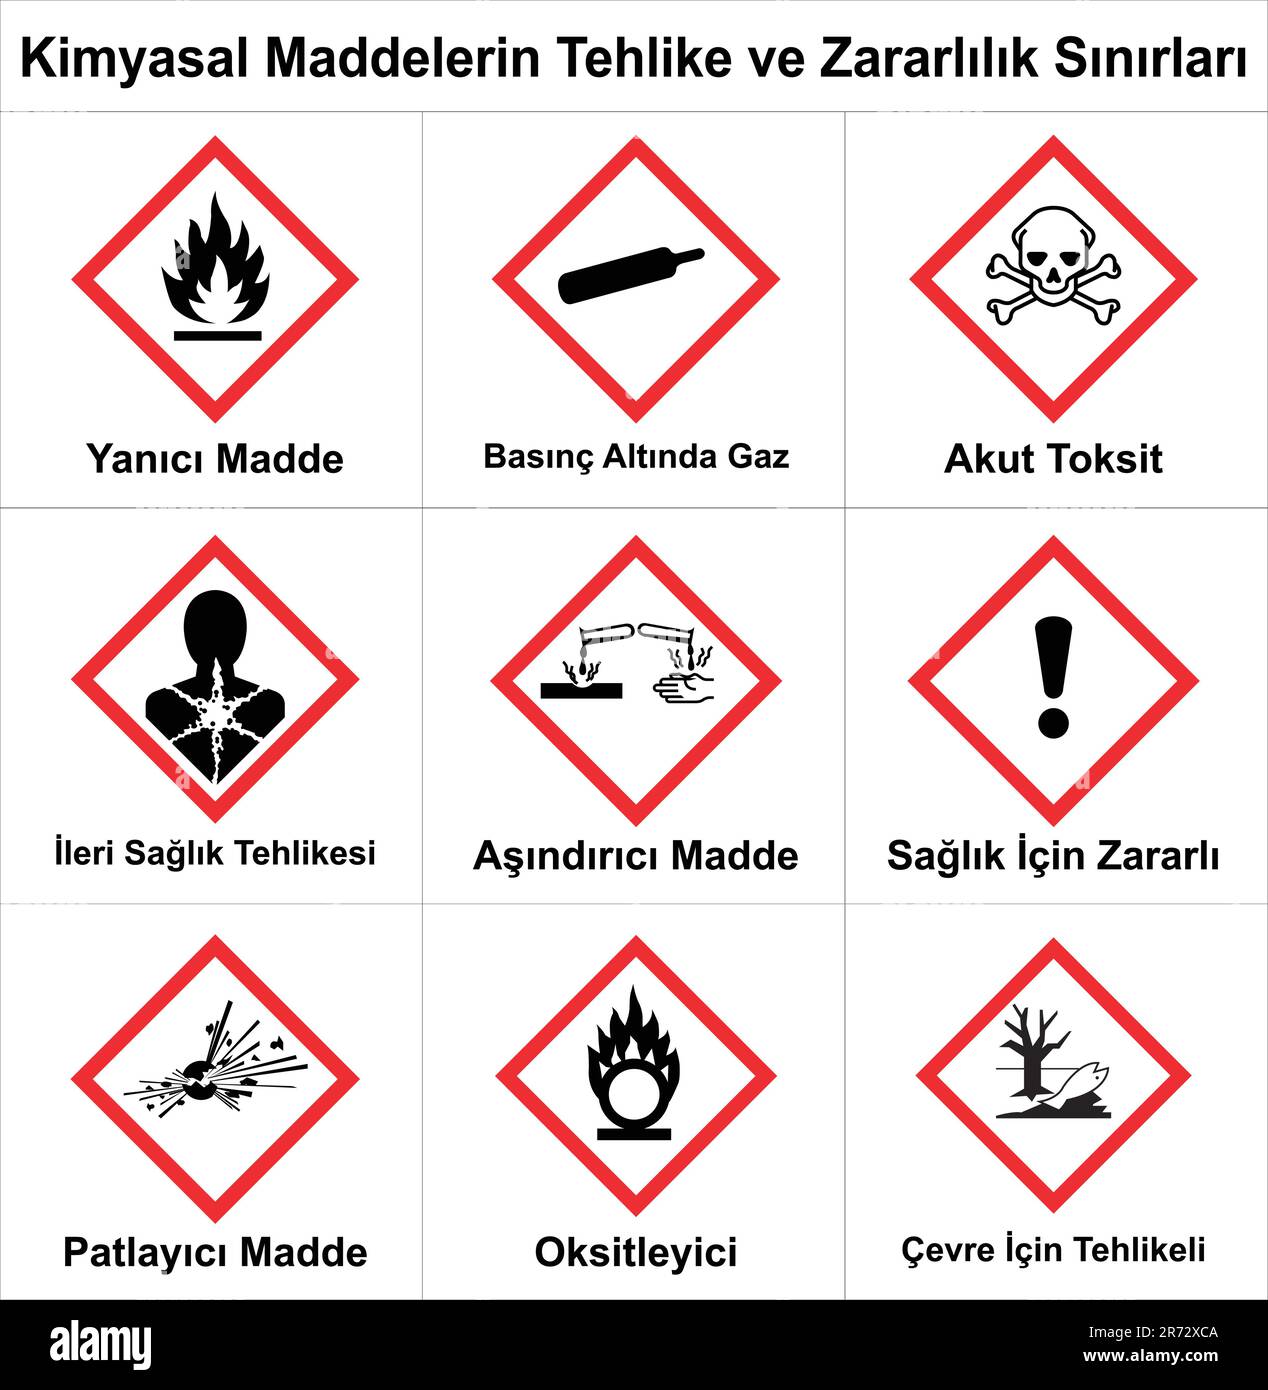 Vektor des Harmonisierten Systems zur Einstufung und Kennzeichnung von Chemikalien in der Türkei auf weißem Hintergrund. Warnungsvektor. Stock Vektor